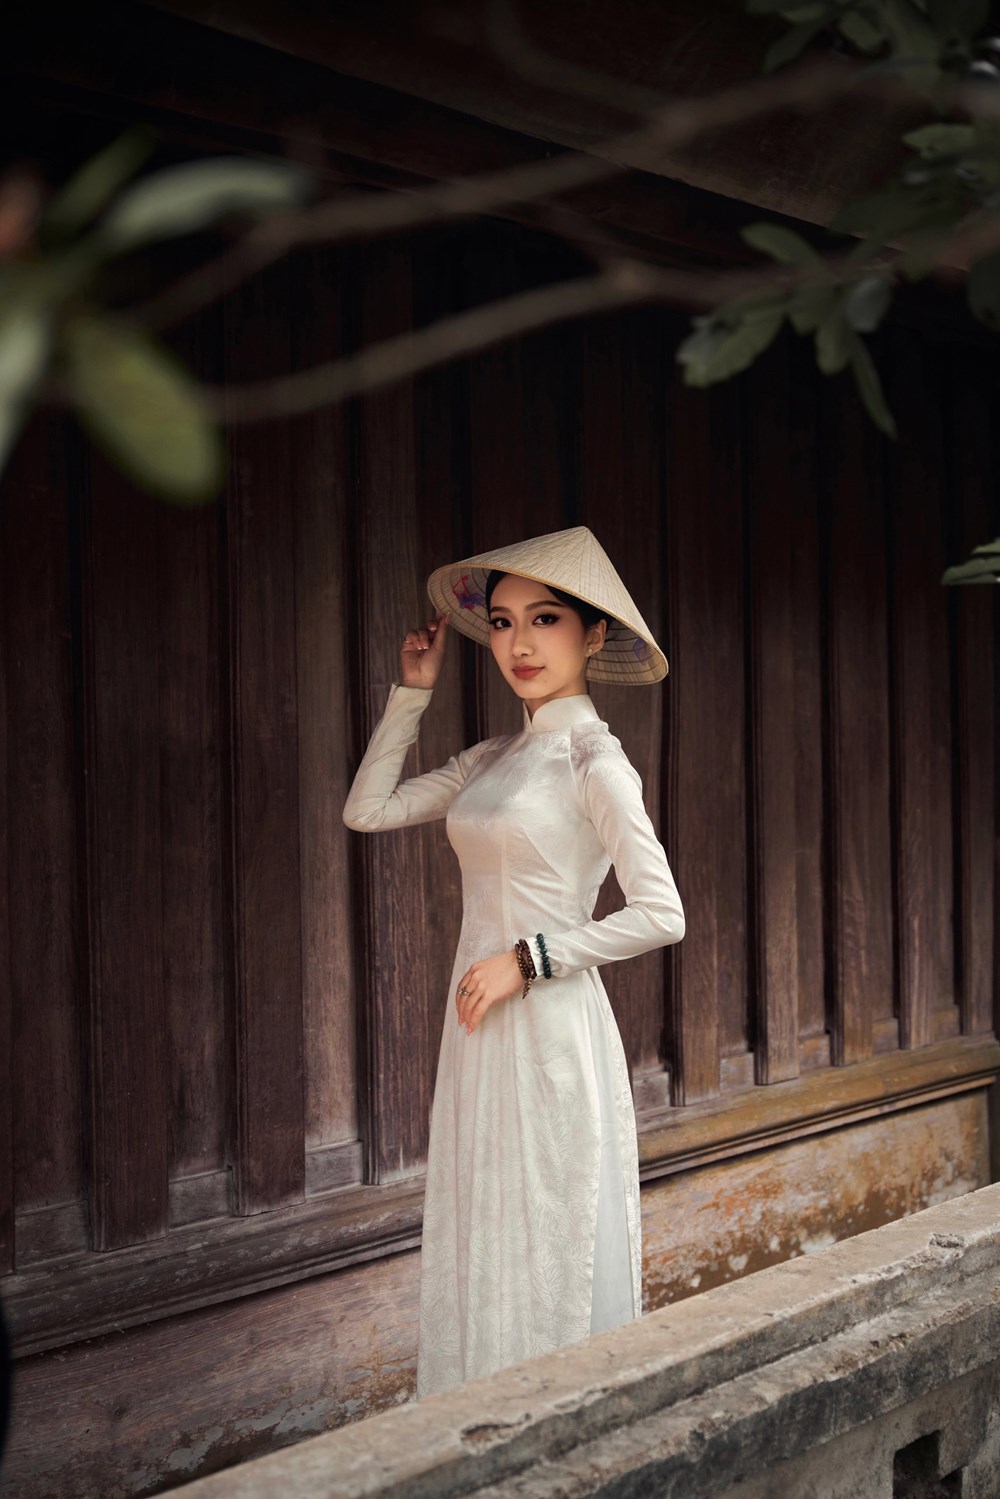 “Đại sứ Sinh viên du lịch năm 2024” đẹp nền nã trong bộ áo dài trắng tinh khôi ở chùa Keo - ảnh 3